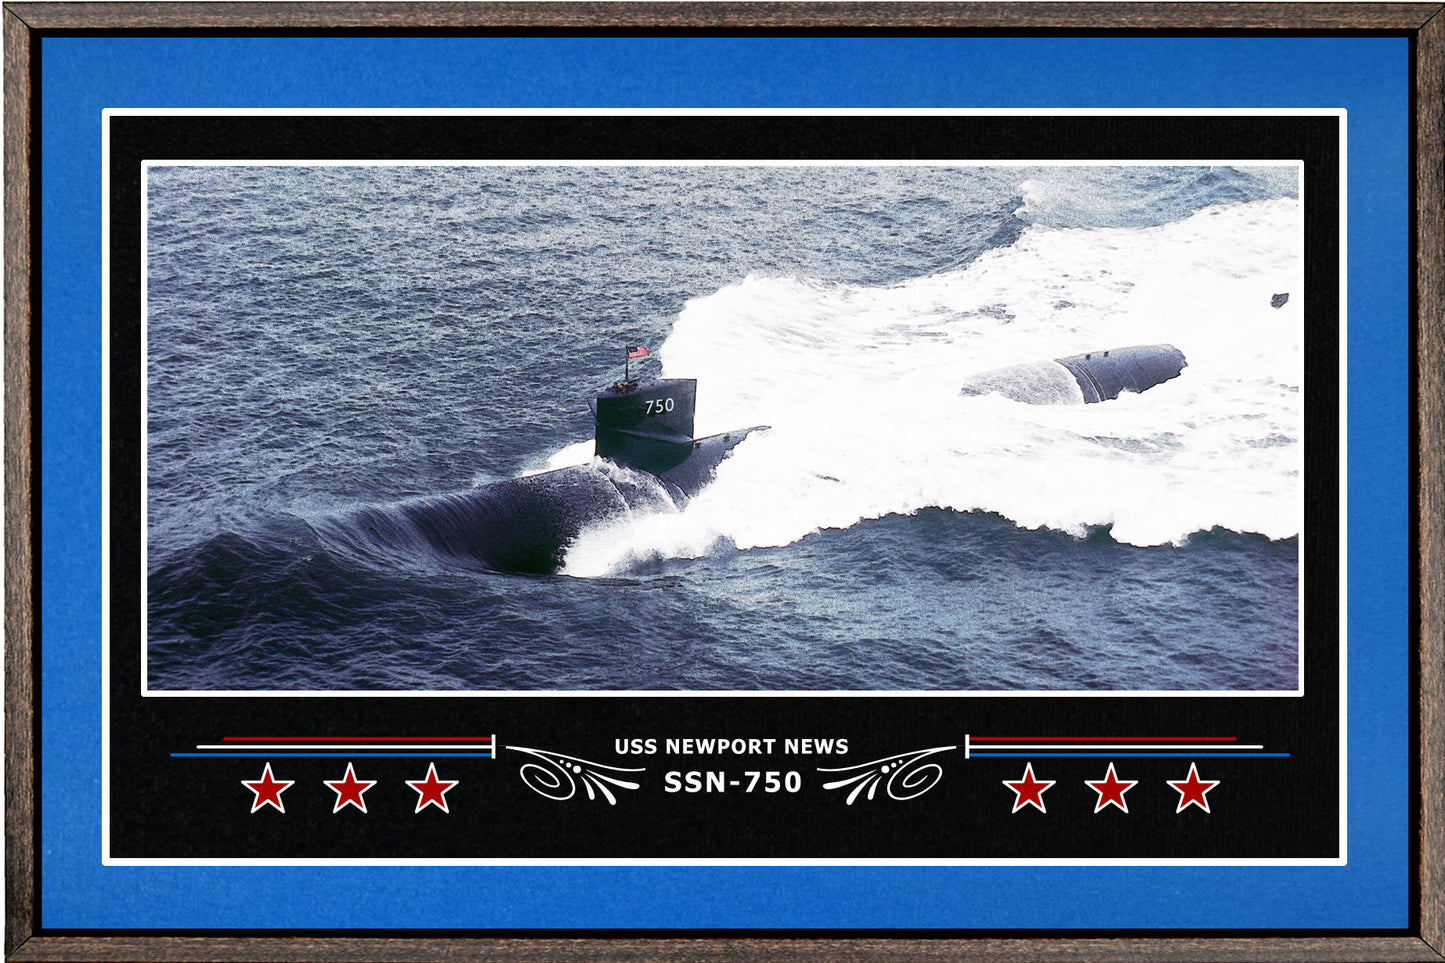 USS NEWPORT NEWS SSN 750 BOX FRAMED CANVAS ART BLUE